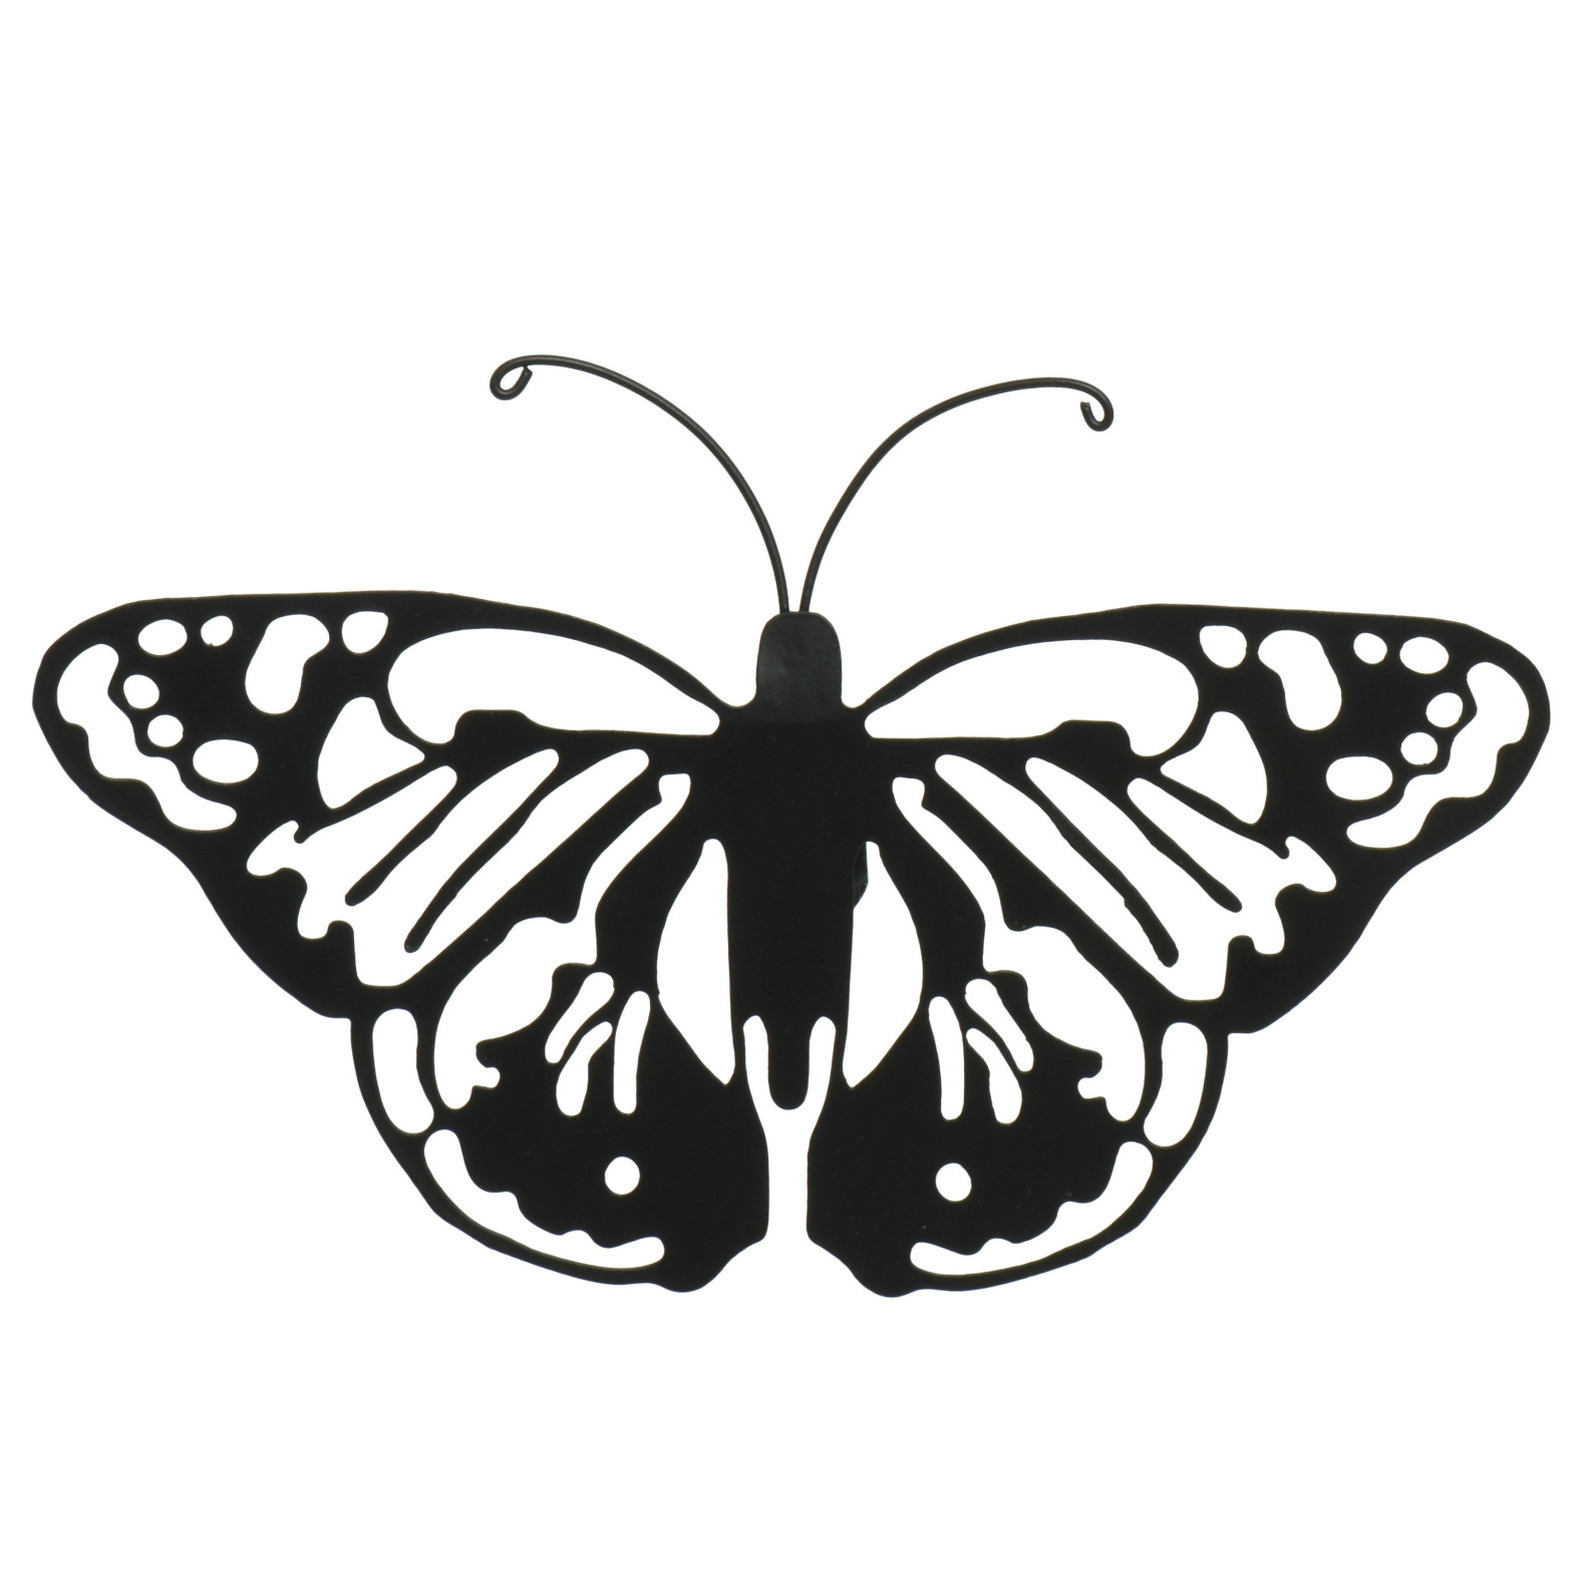 Tuin wanddecoratie vlinder metaal zwart 36 x 25 cm